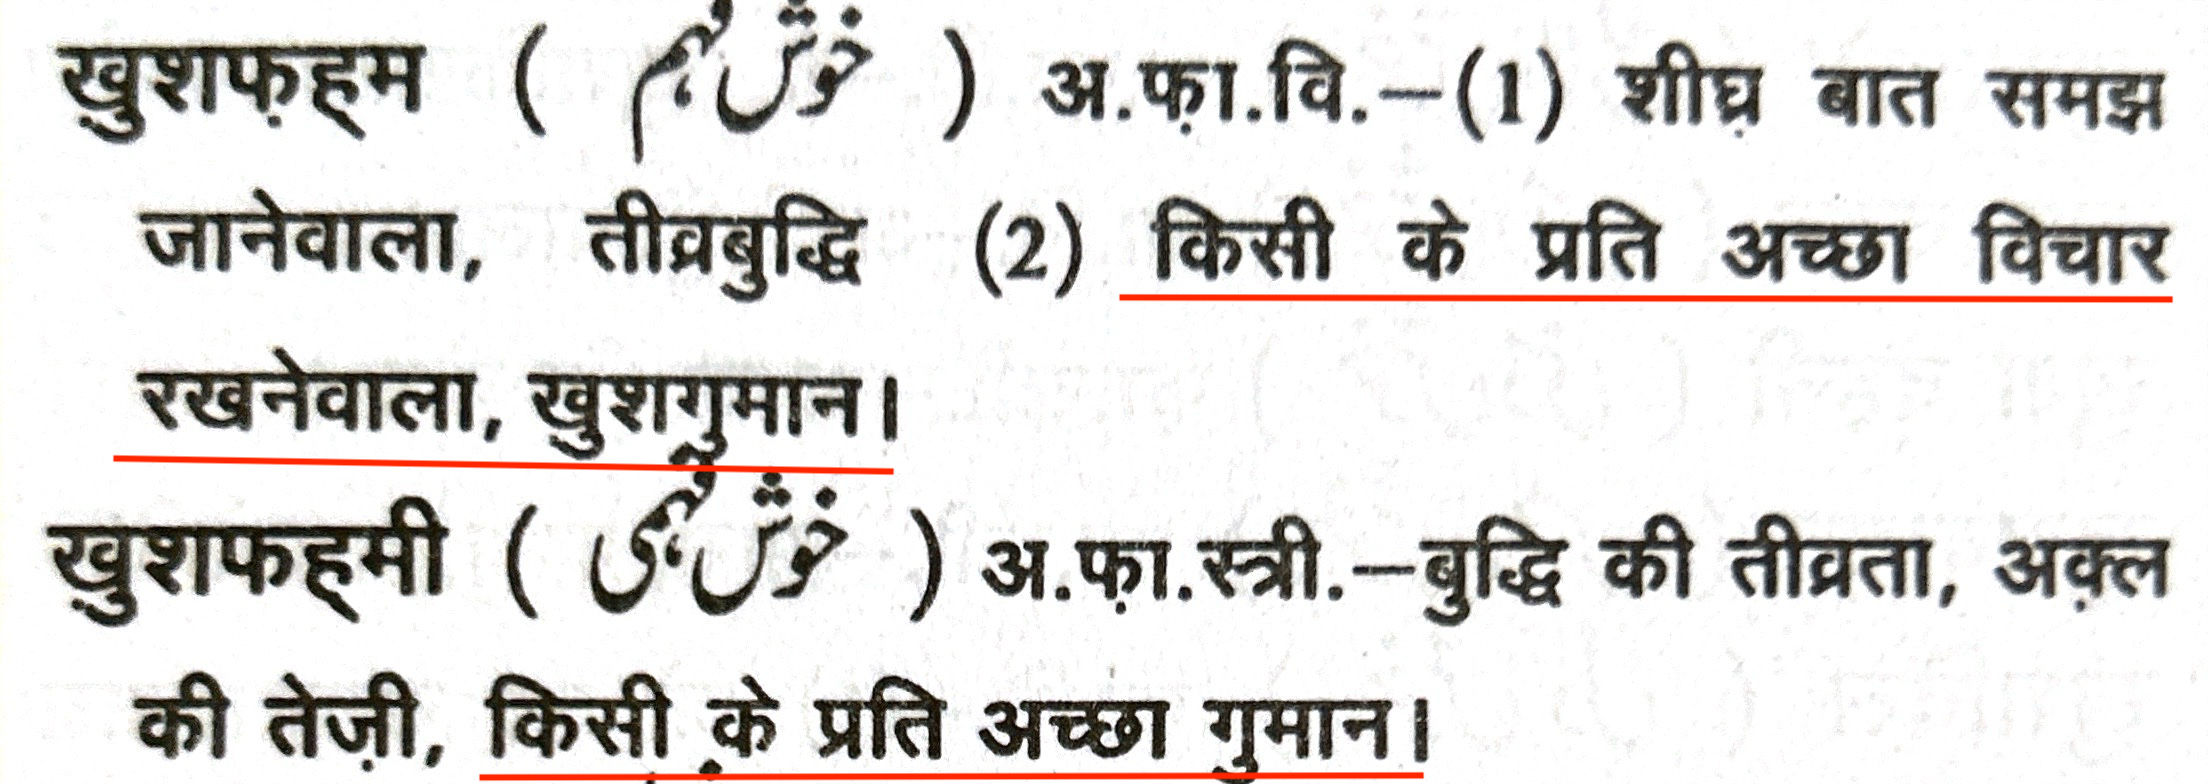 ख़ुशफ़ह्म और ख़ुशफ़ह्मी का मतलब मद्दाह के उर्दू-हिंदी शब्दकोश में।